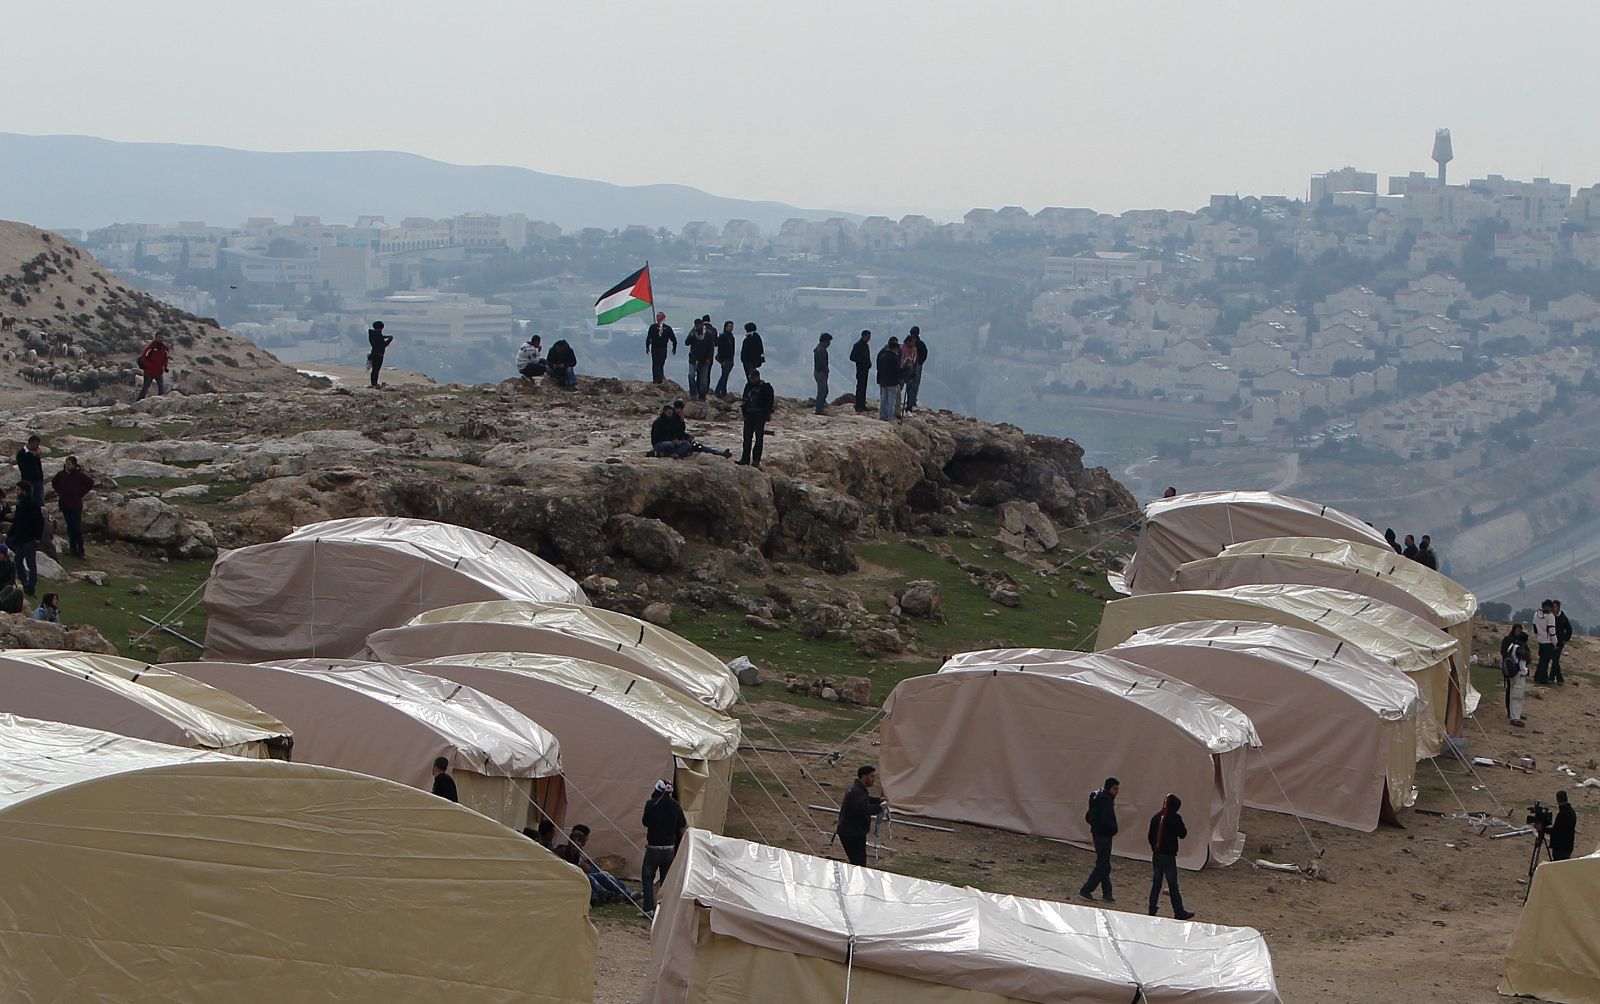 La bandera palestina ondea junto a las tiendas de campaña del improvisado asentamiento 'Bab al Shams'.